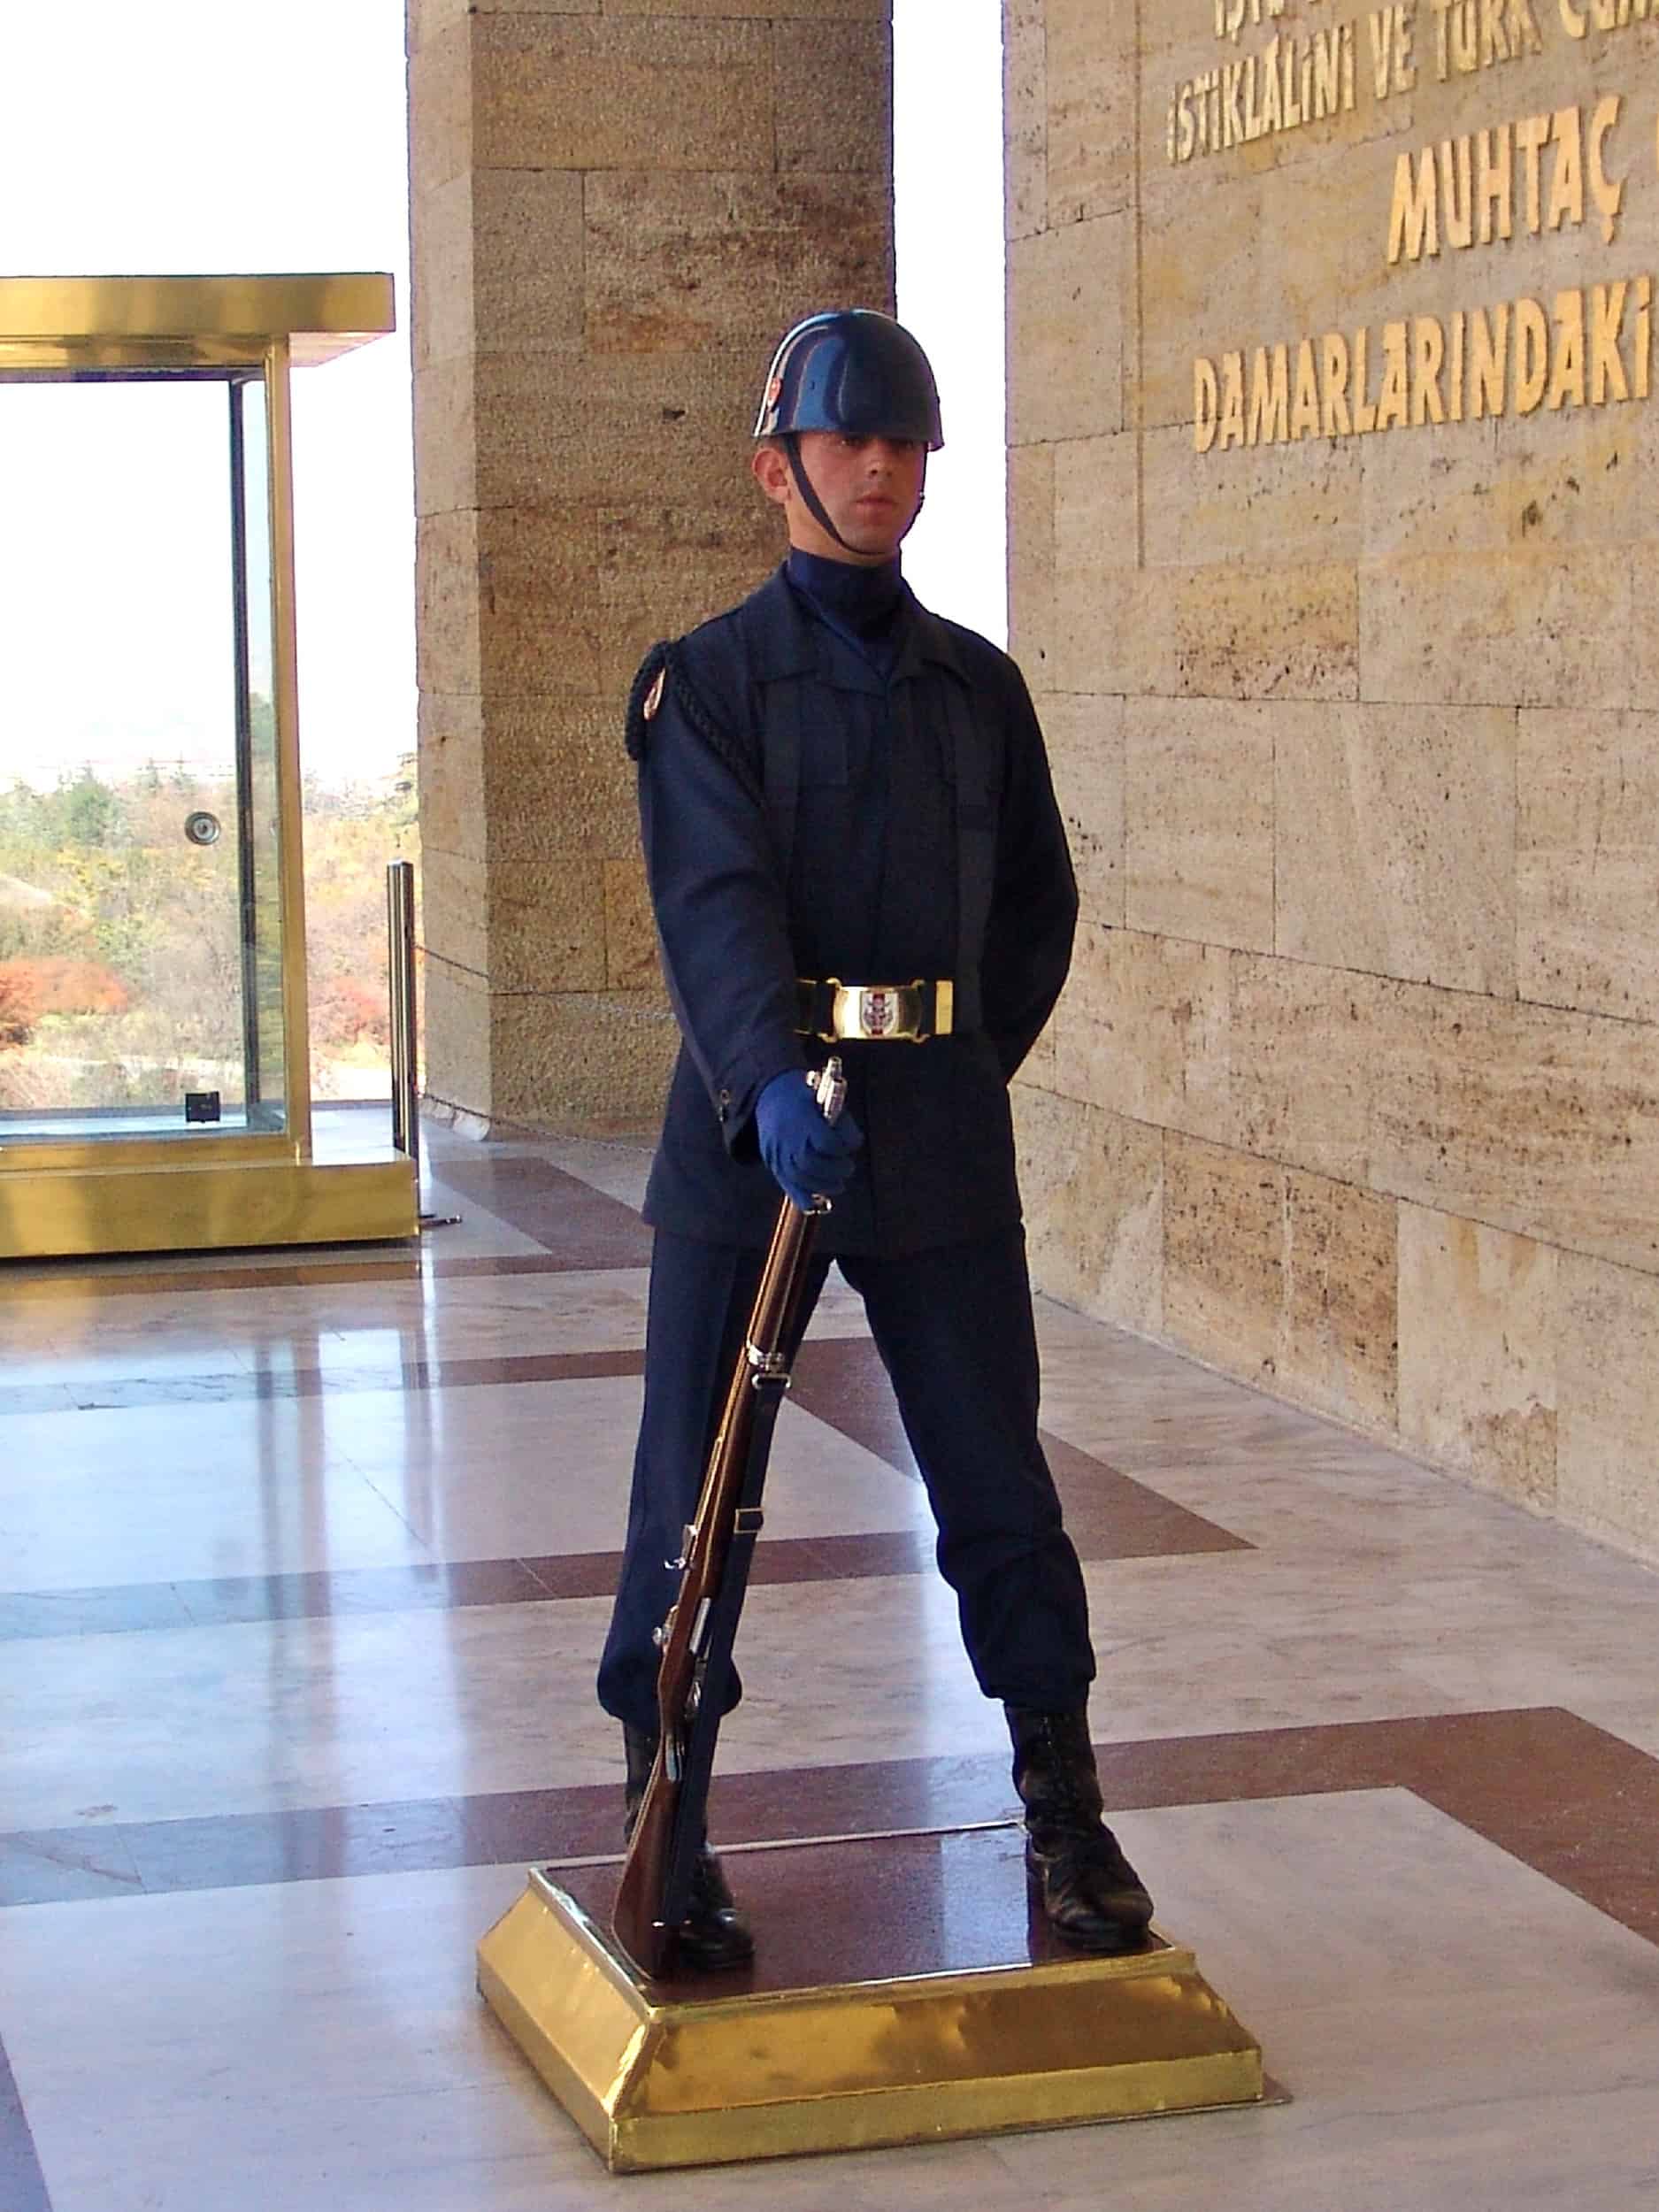 Turkish soldier at Anıtkabir in Ankara, Turkey